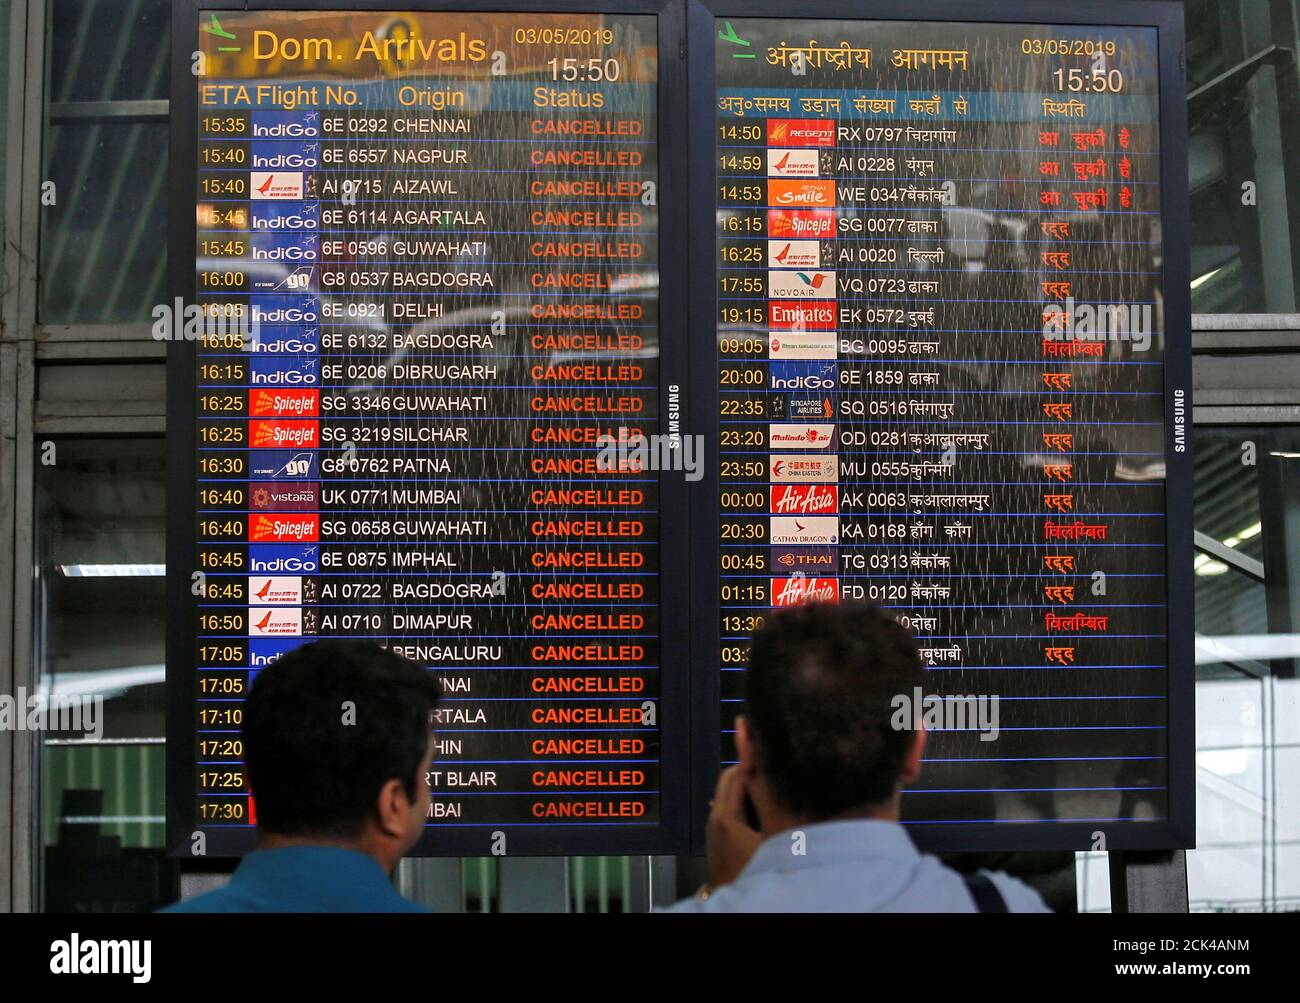 Les passagers bloqués regardent un tableau d'information de vol affichant des vols annulés à la suite du Cyclone Fani, à l'aéroport international Netaji Subhas Chandra Bose de Kolkata, Inde, le 3 mai 2019. REUTERS/Rupak de Chowdhuri Banque D'Images